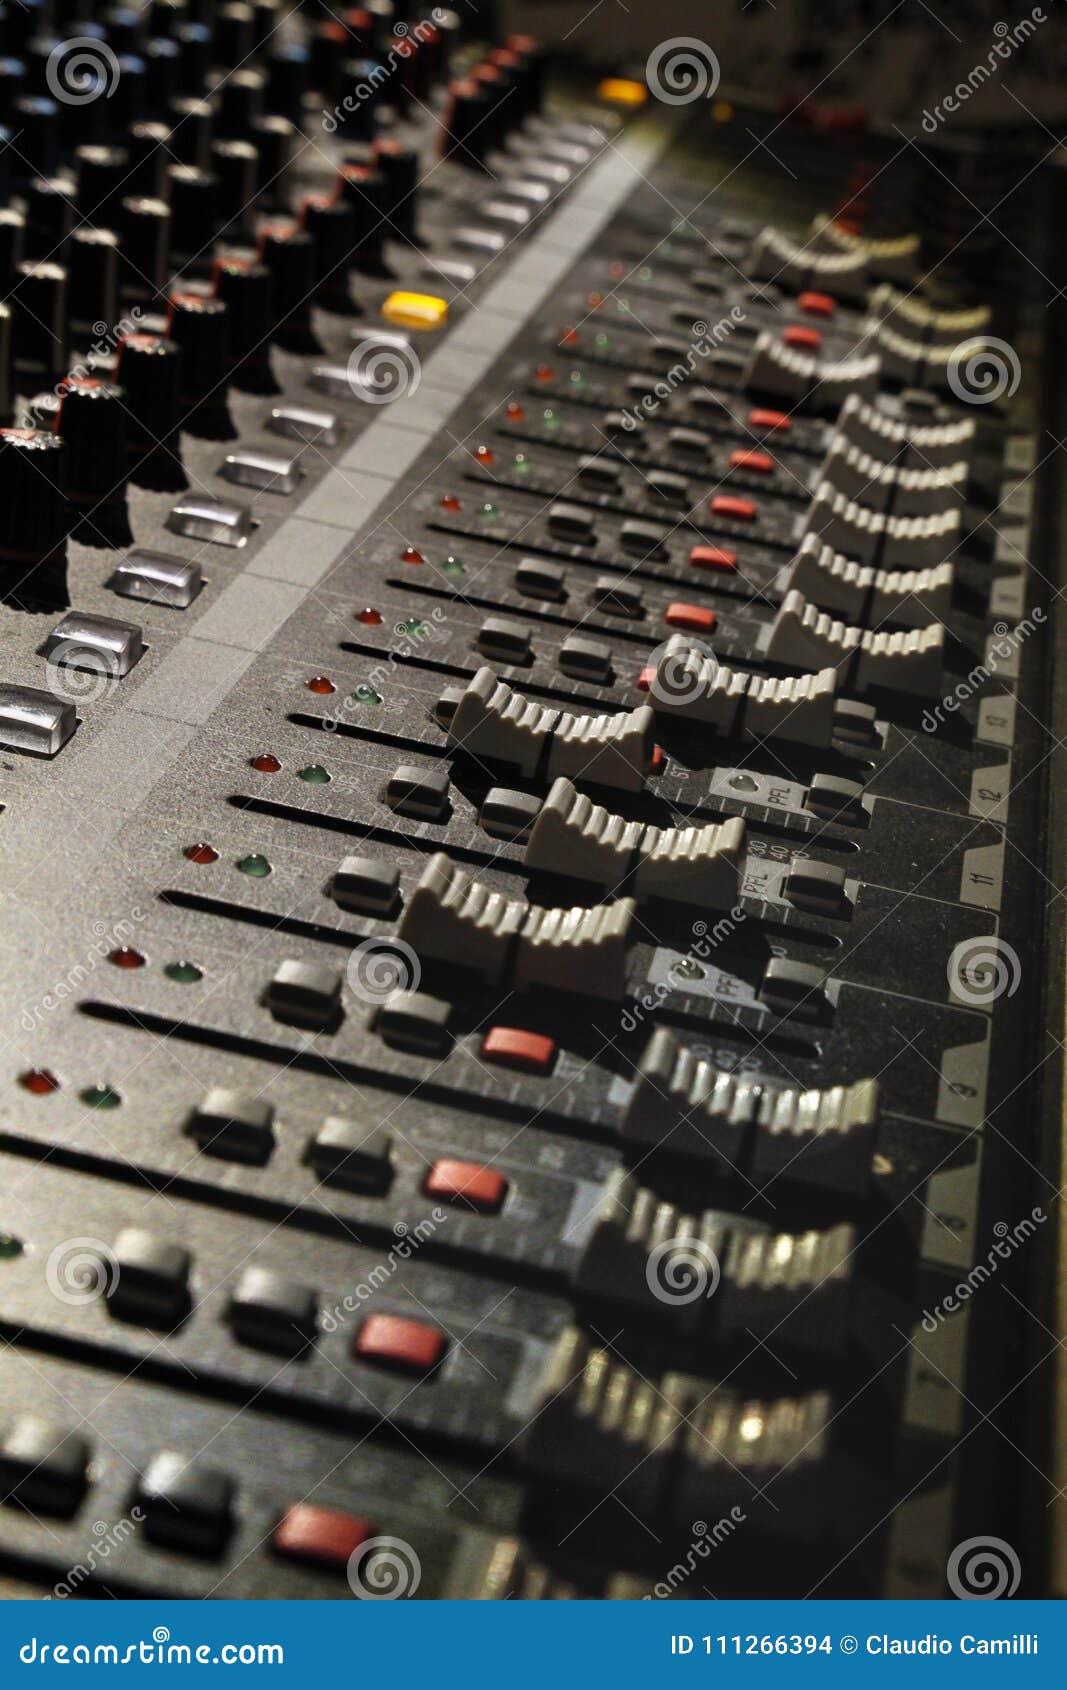 dj mixer panel